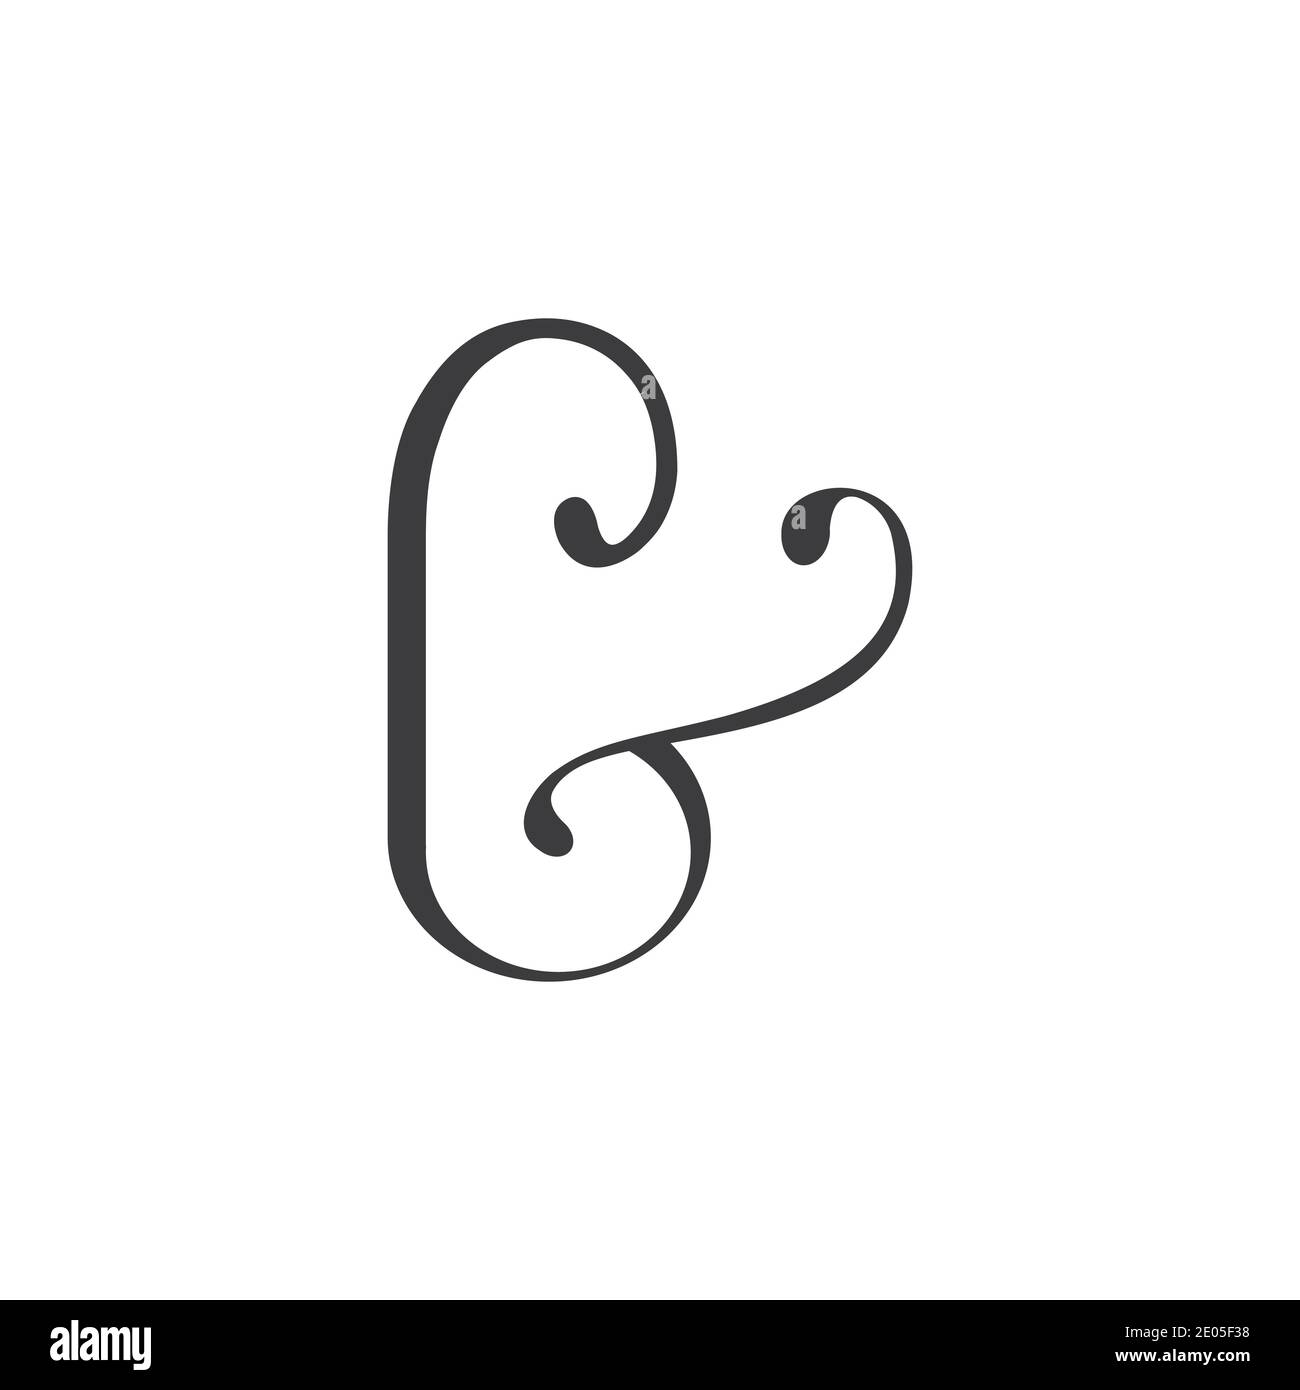 Initial letter bk logo or kb logo vector design template Stock Vector